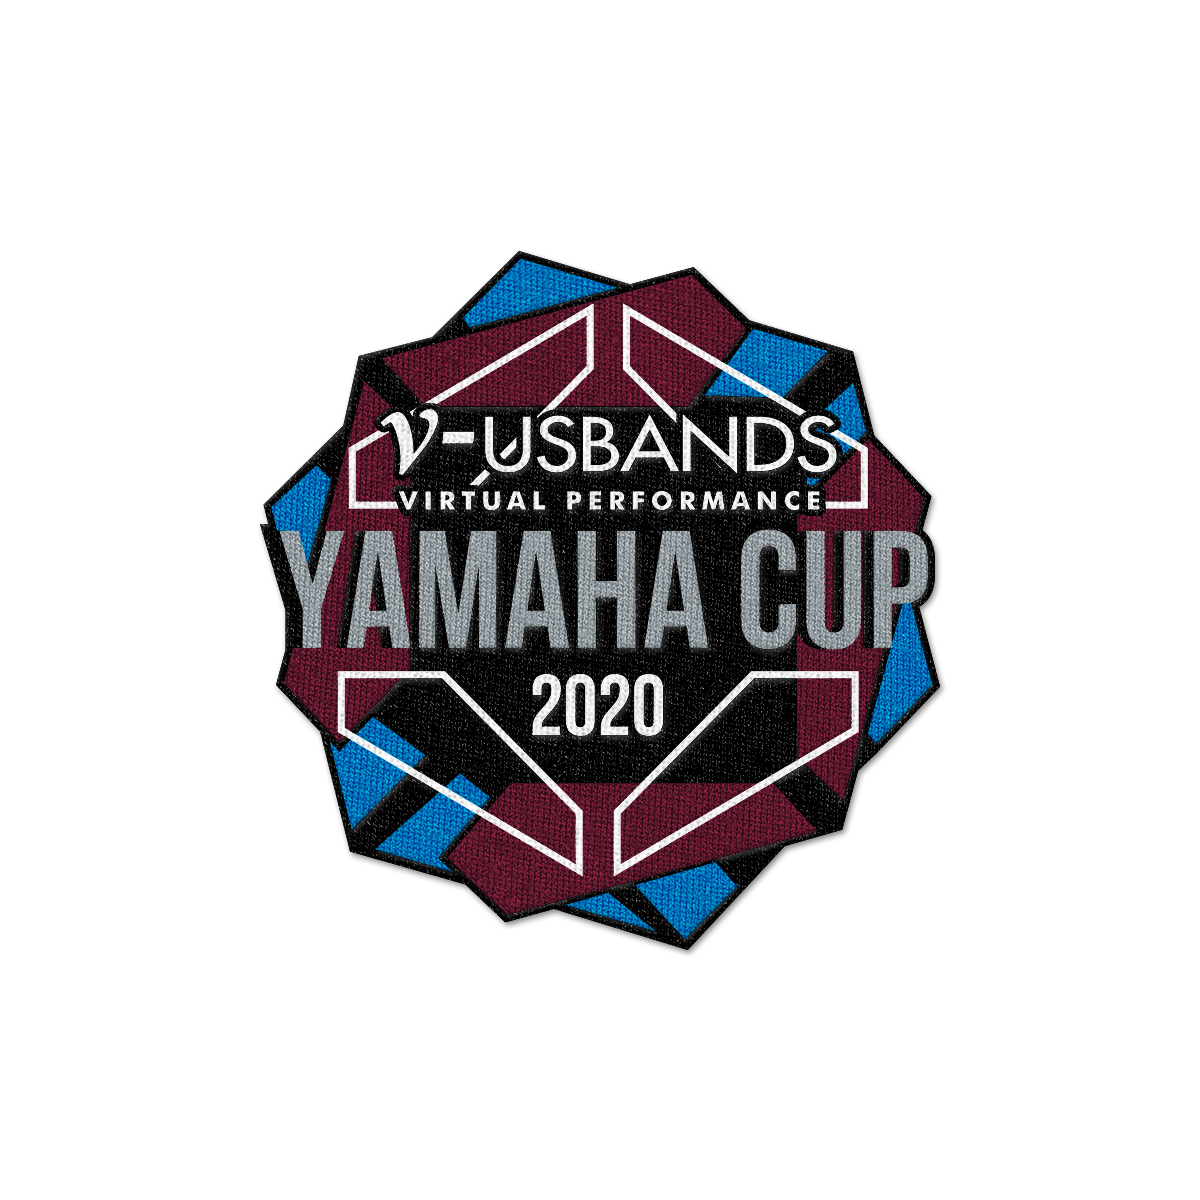 2020 V-USBands Yamaha Cup Patch